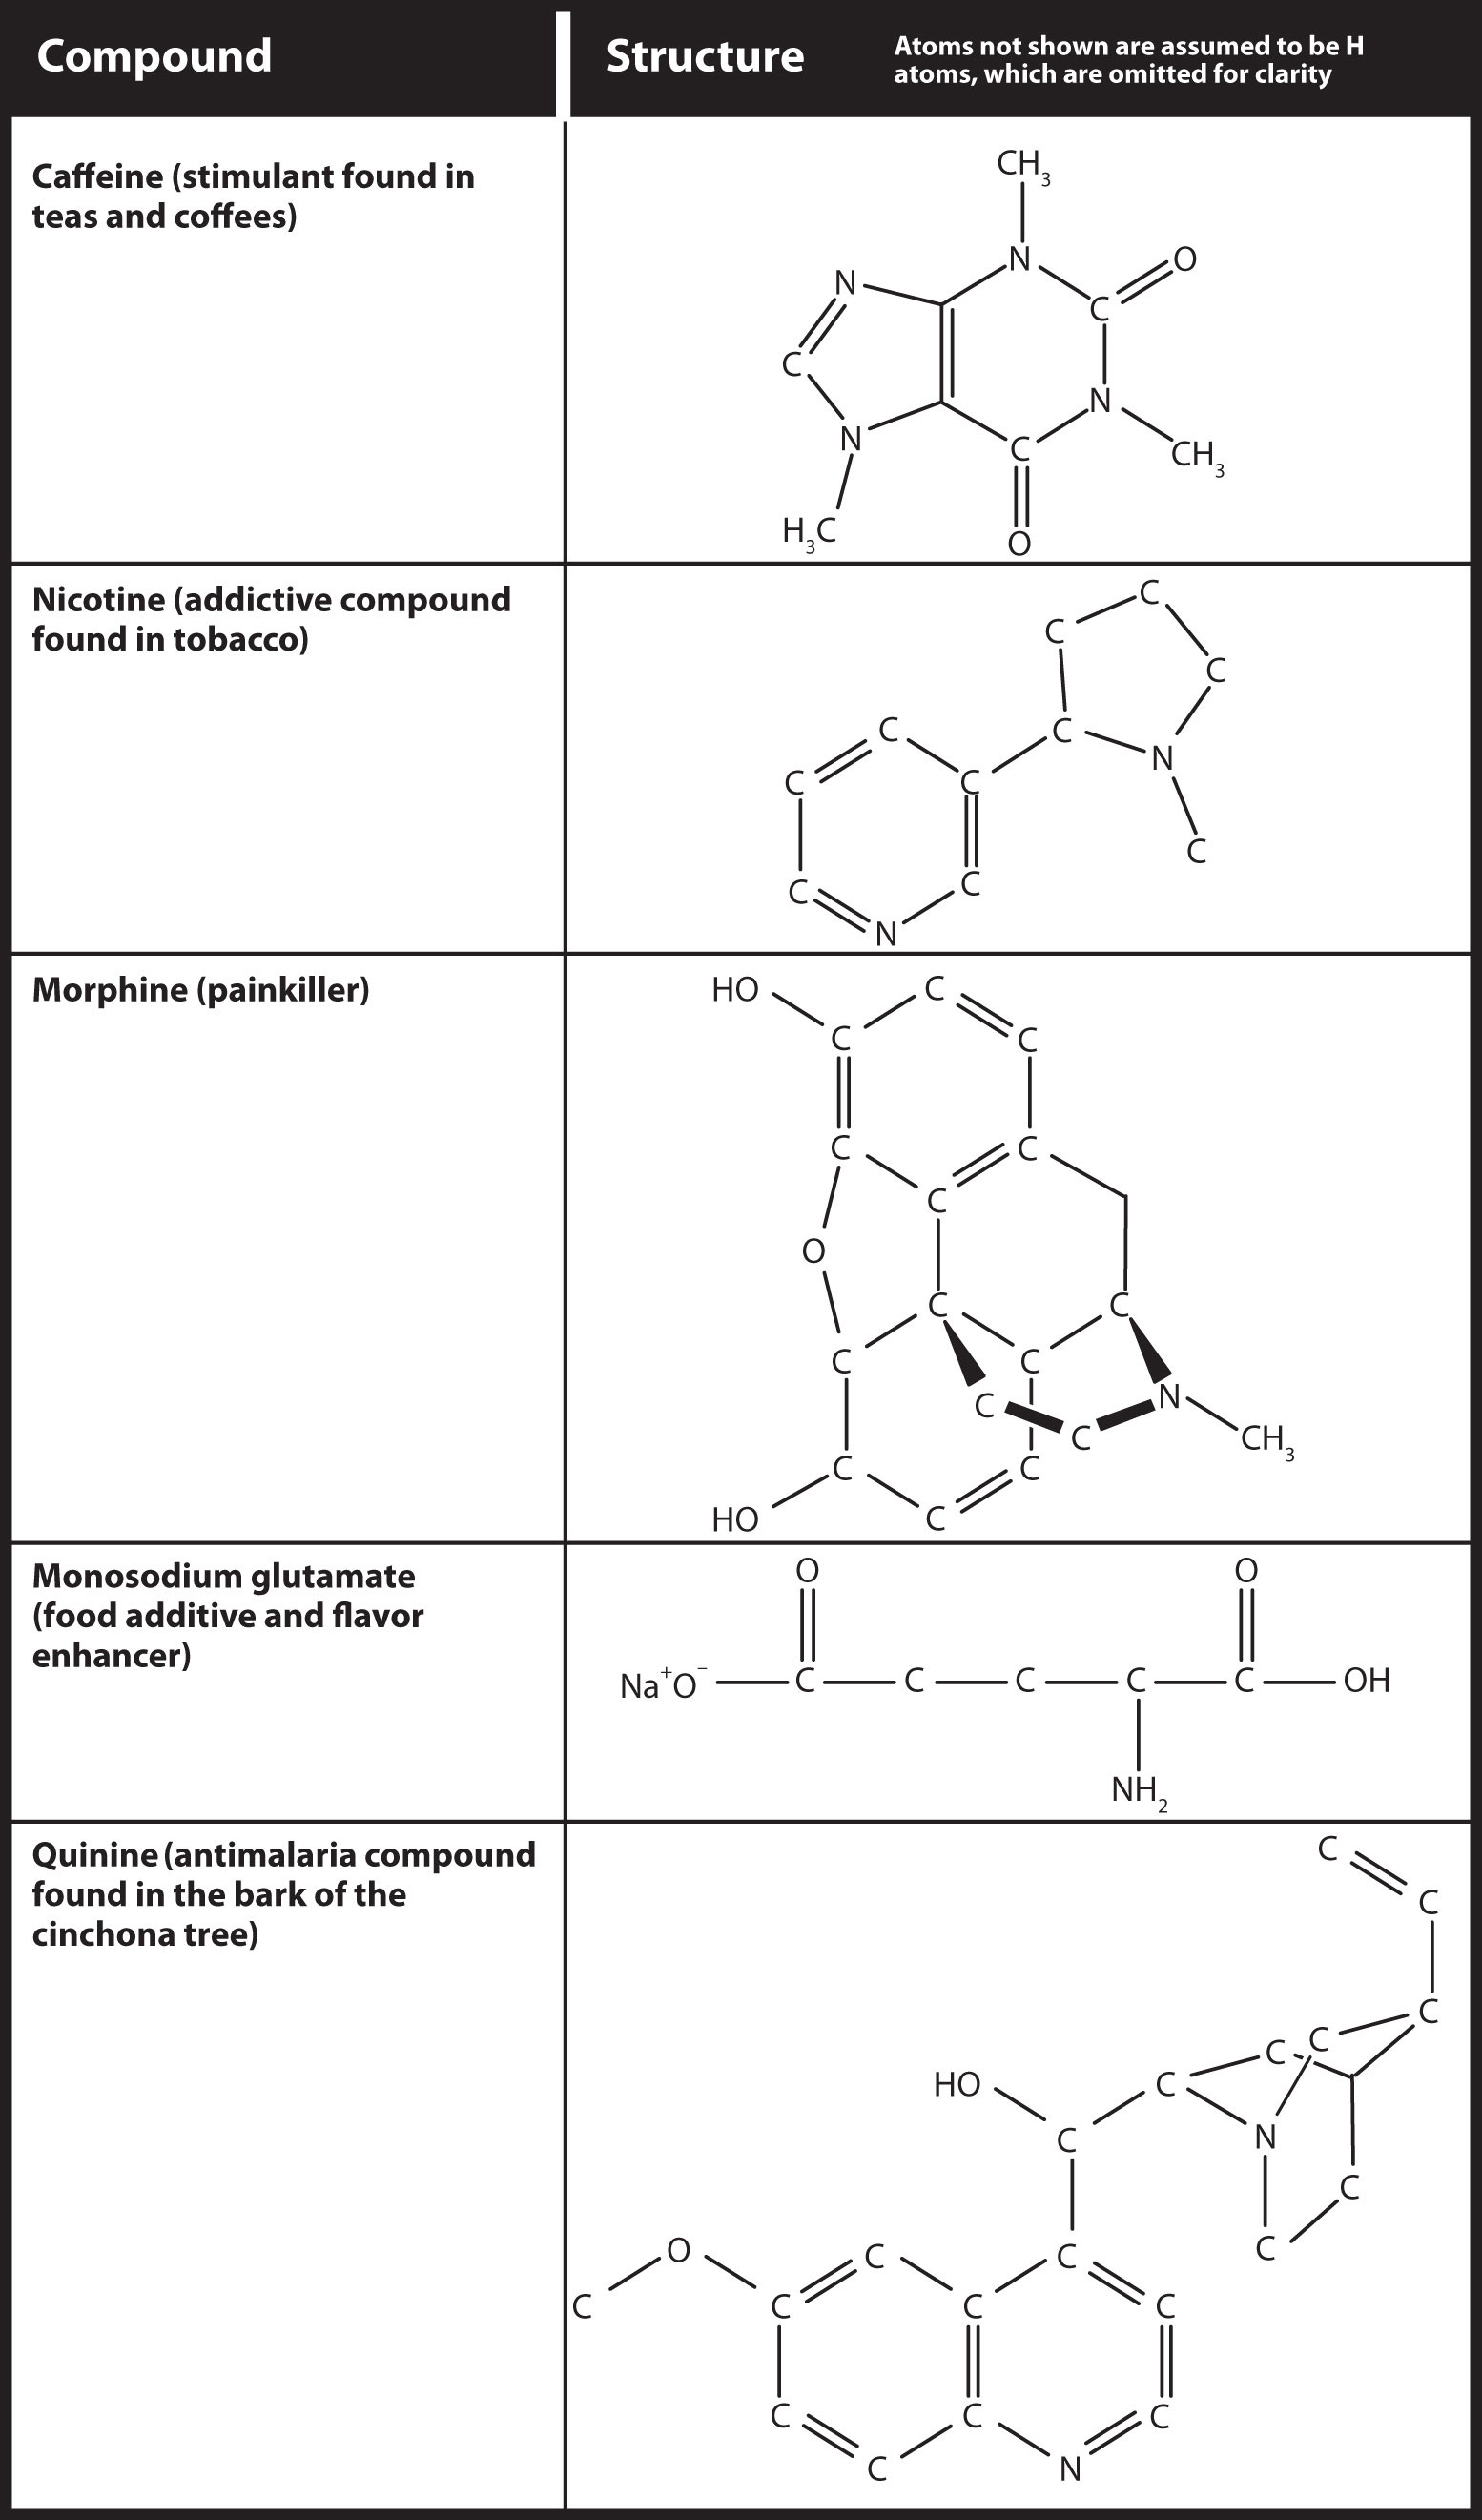 Structures of caffeine, nicotine, morphine, monosodium glutamate, and quinine are shown.